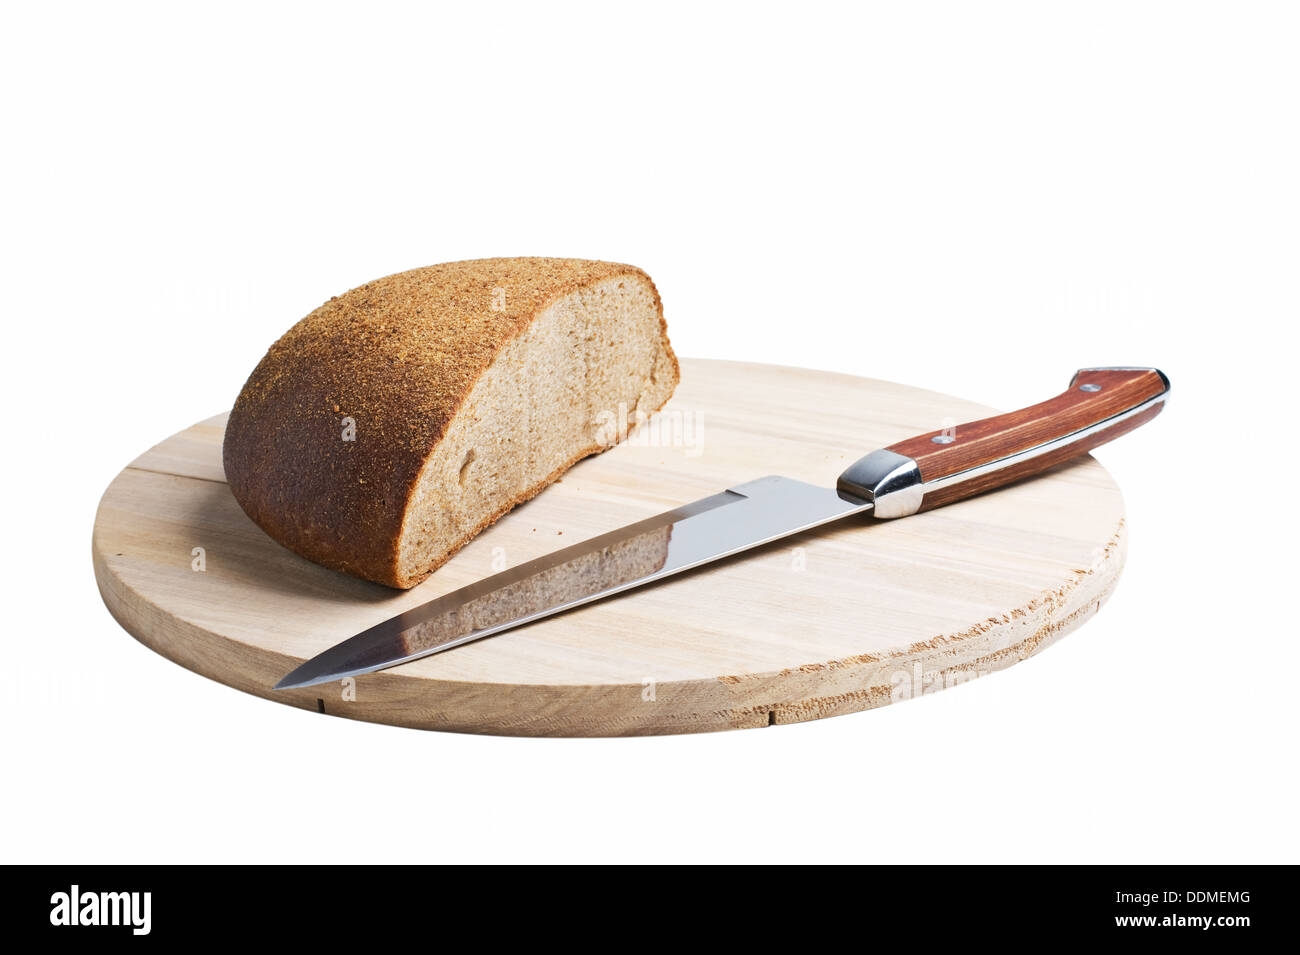 Bread and bread knife on a table in a … – Ottieni la licenza per le foto –  402188 ❘ StockFood